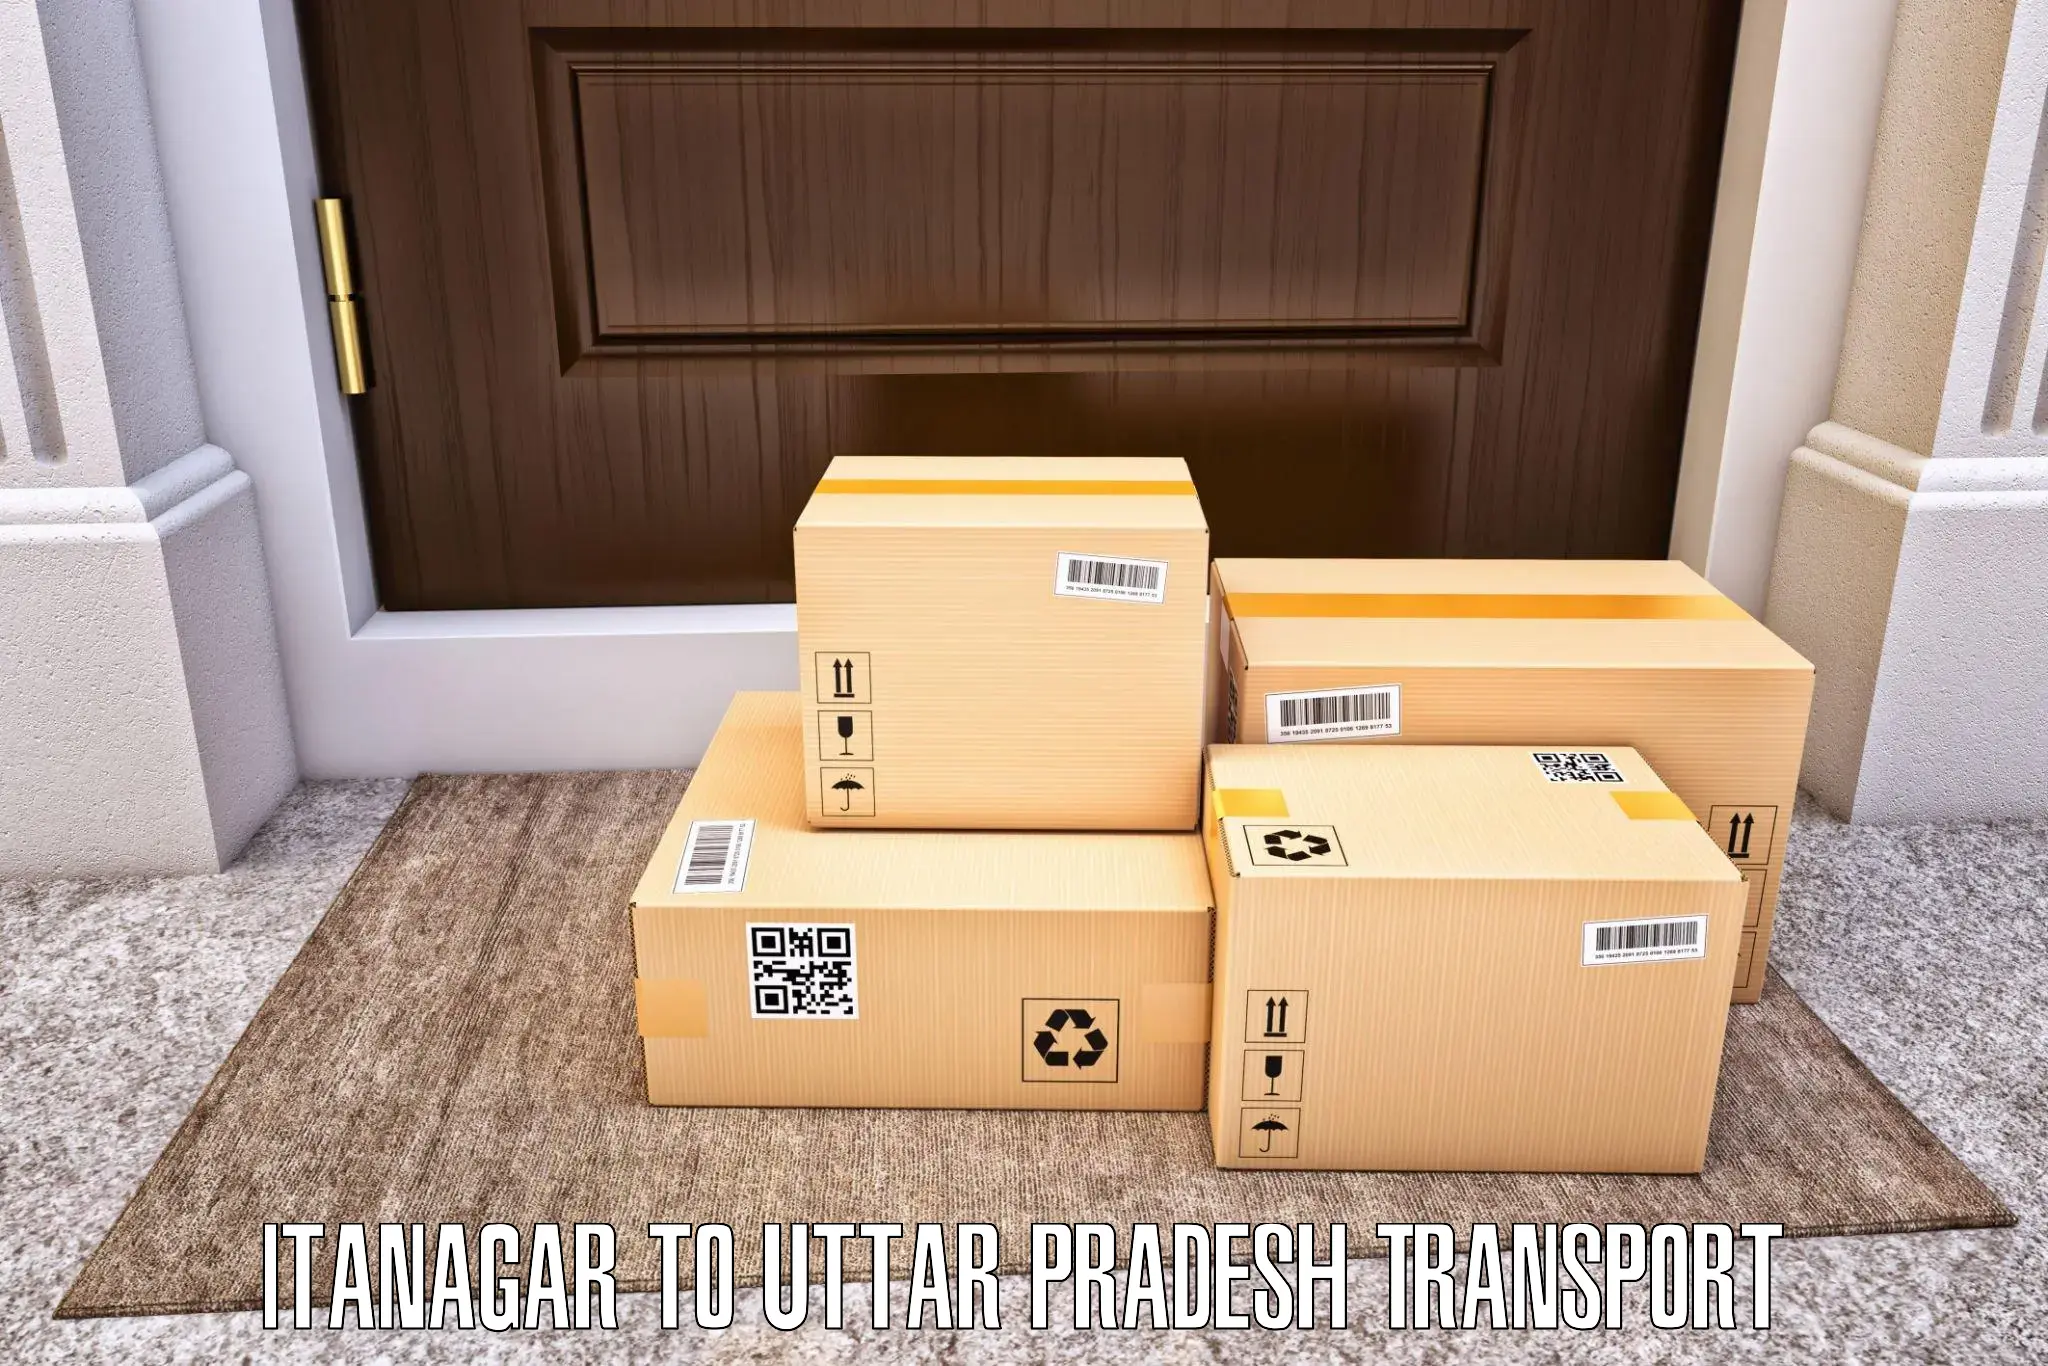 Cargo train transport services Itanagar to Kanpur